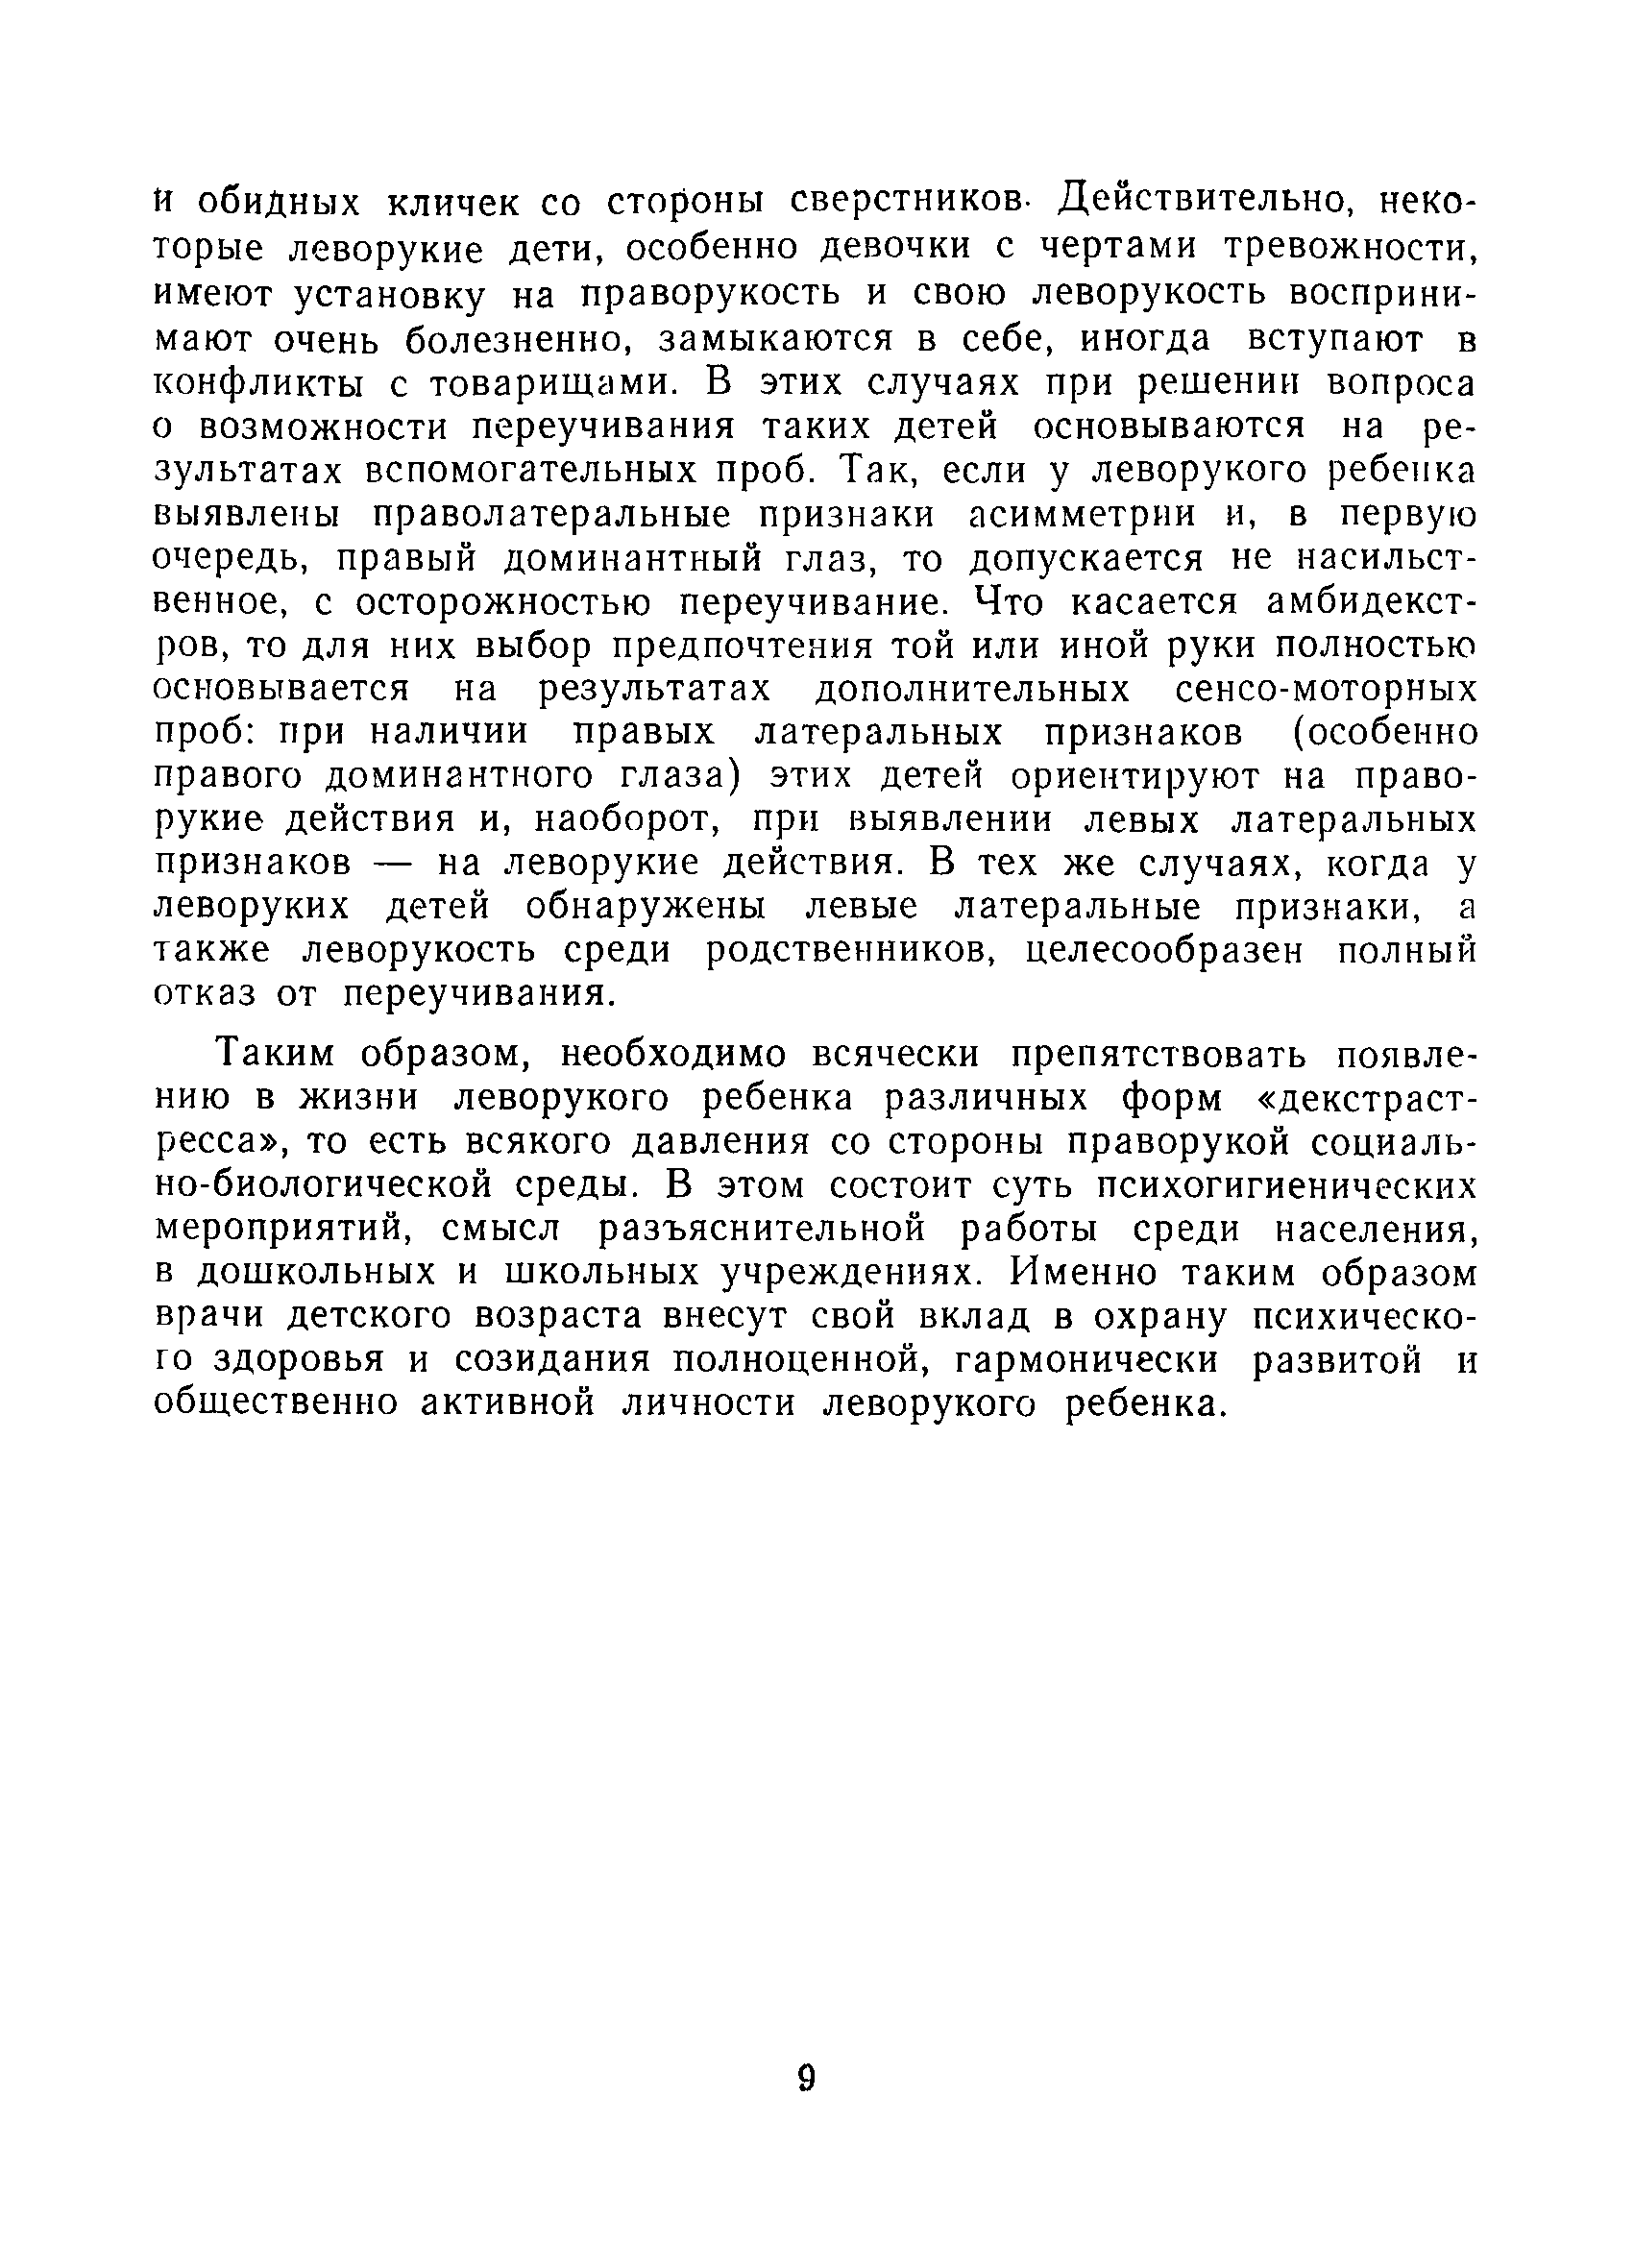 Методические рекомендации 11-14/14-6